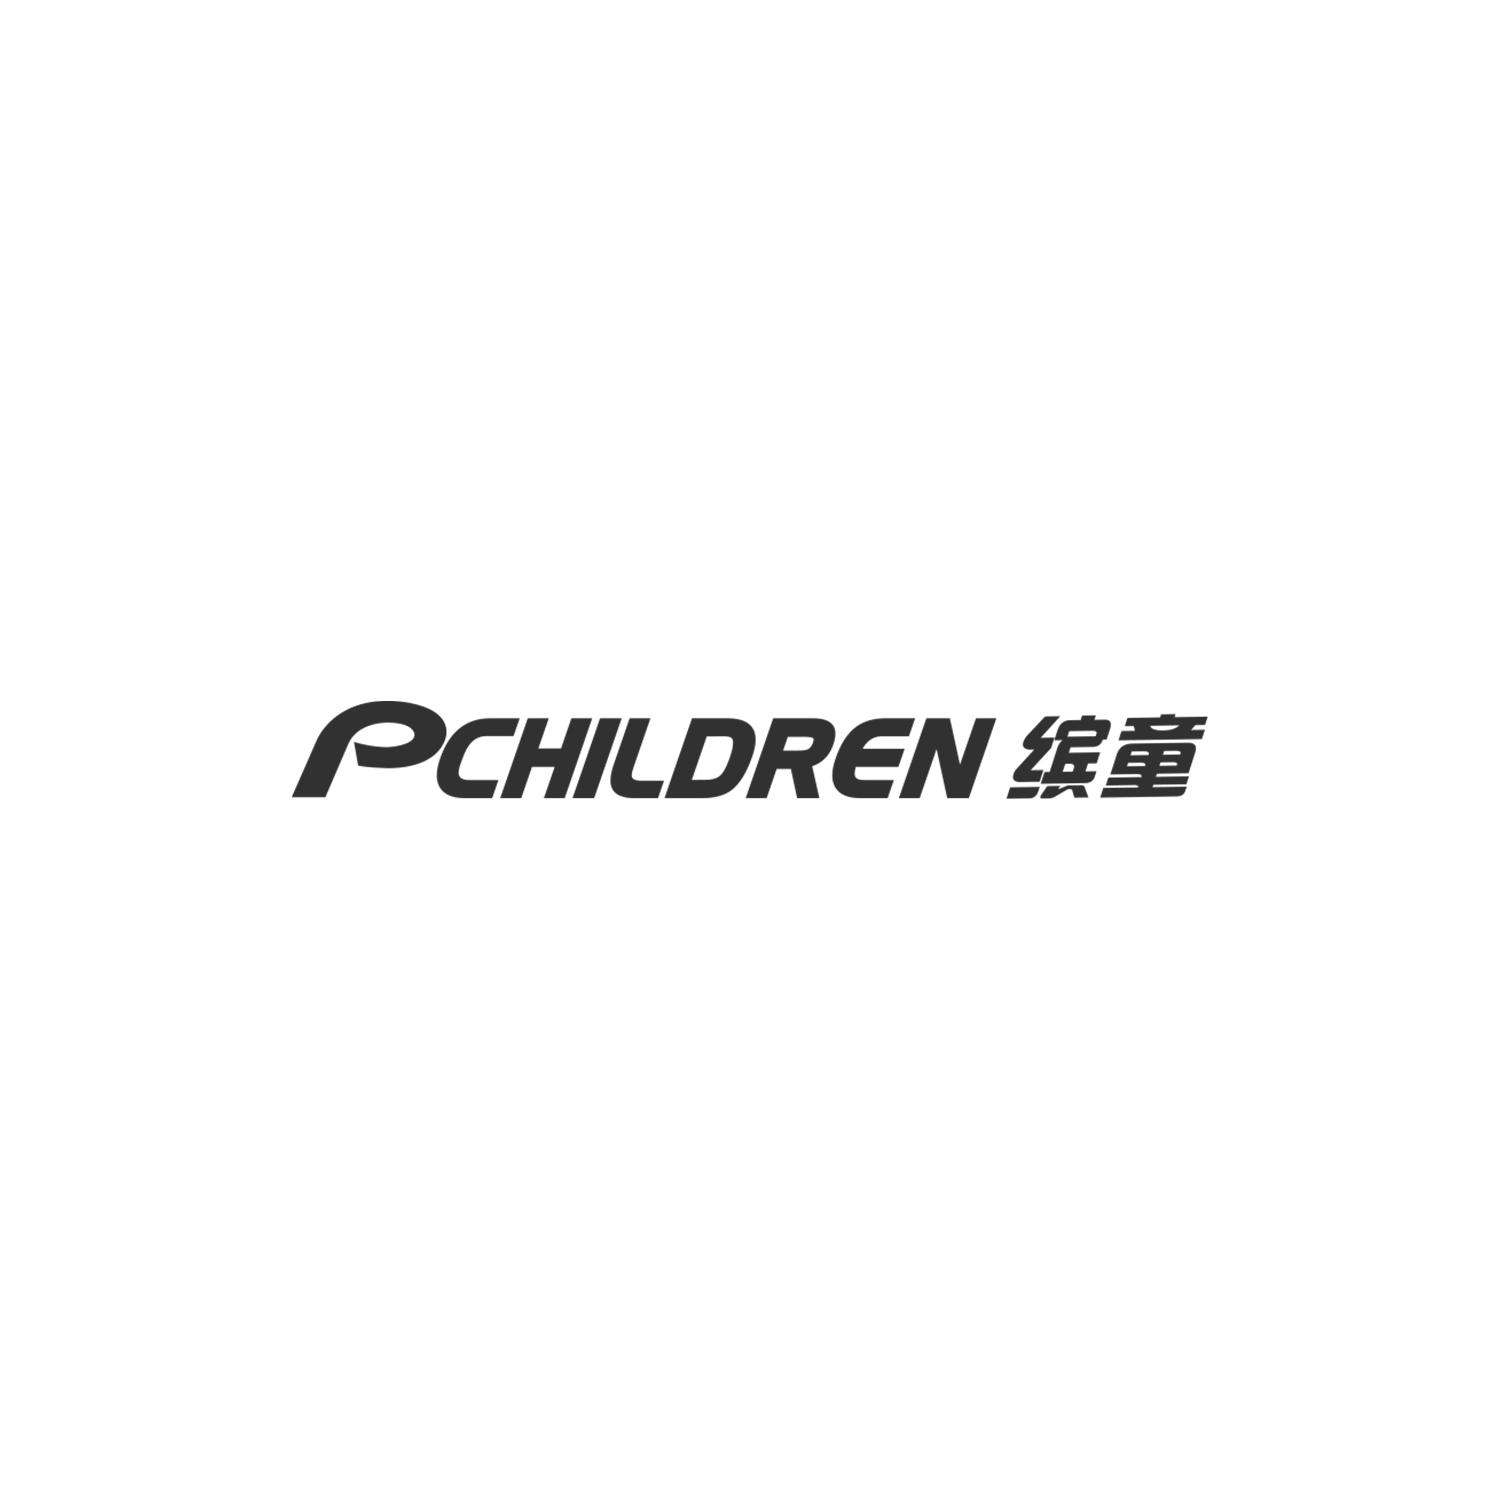 PCHILDREN缤童